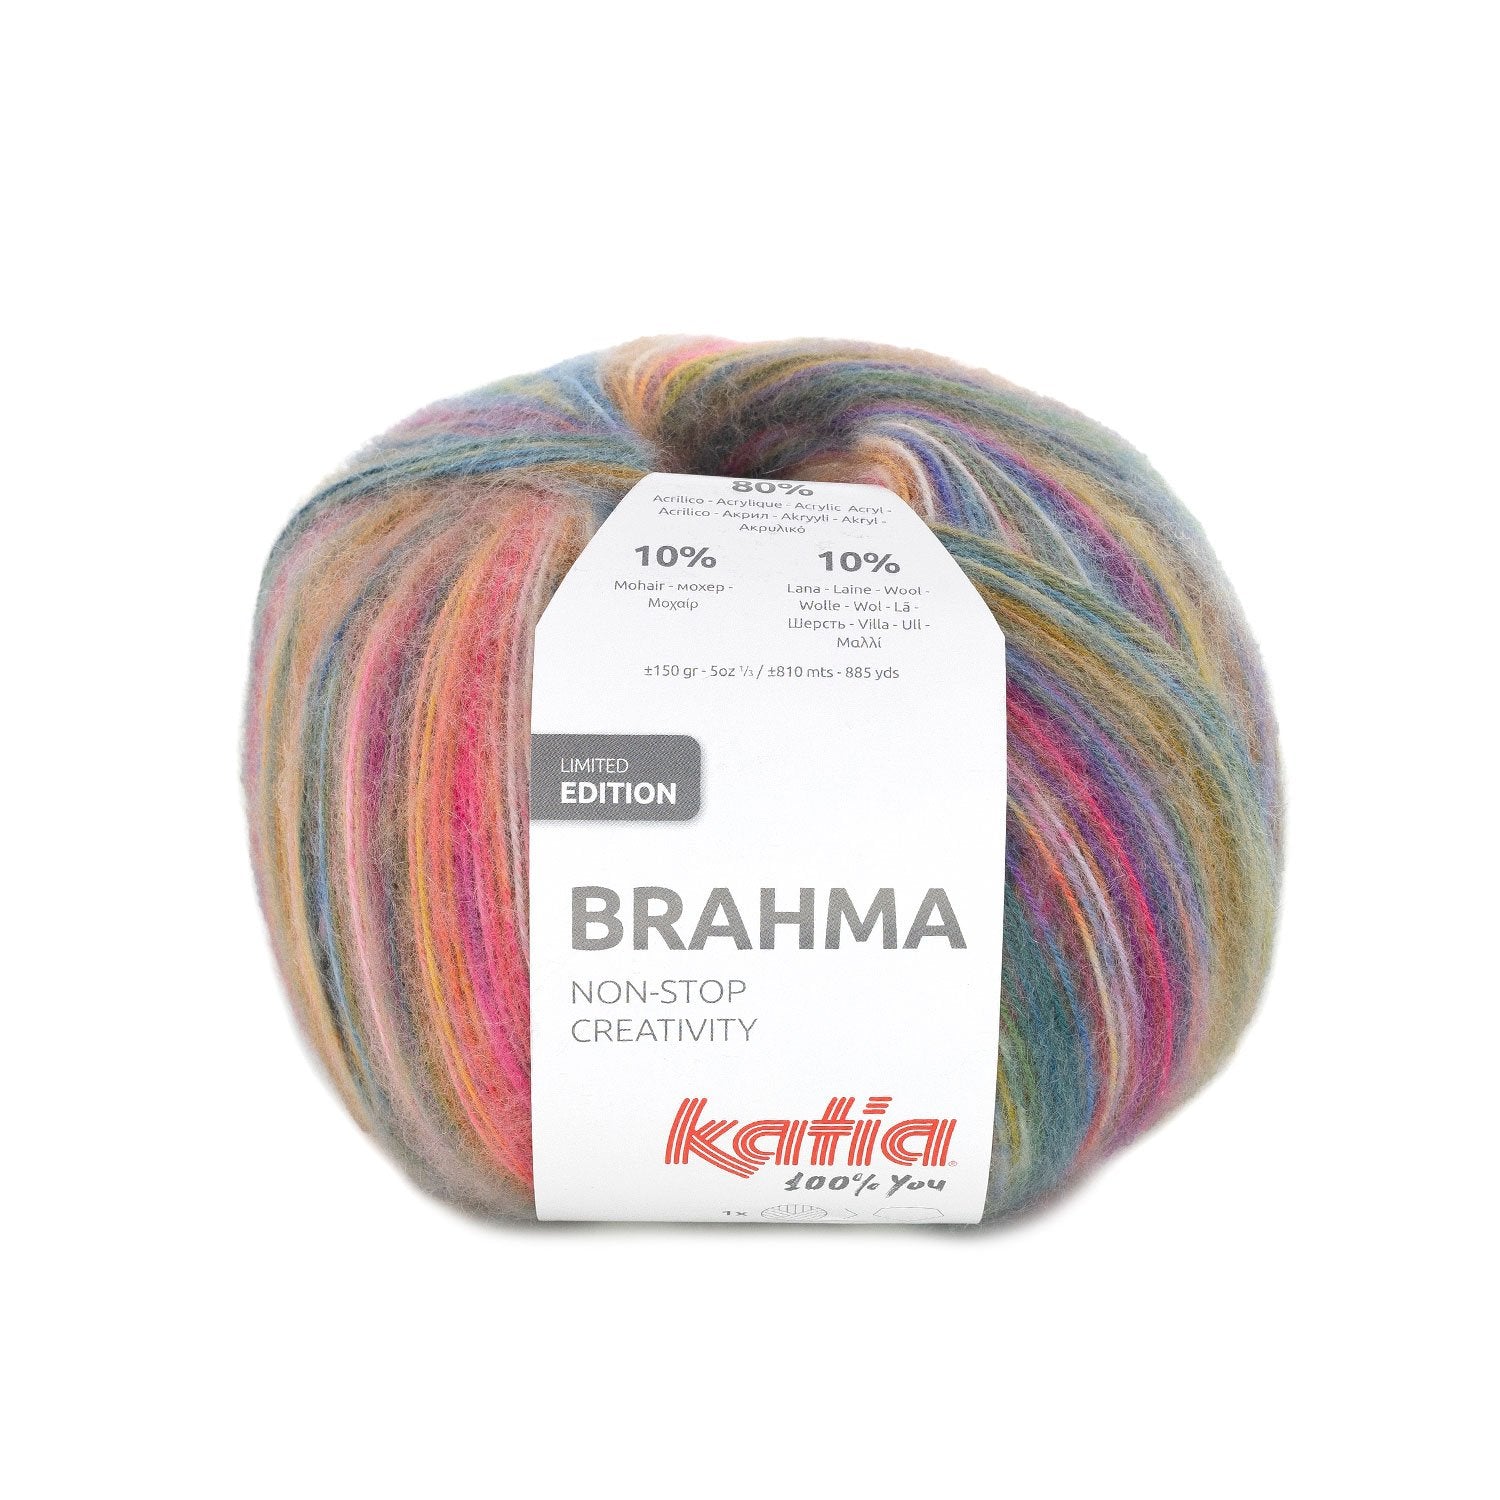 Katia Brahma: Colores alegres y versatilidad en cada puntada